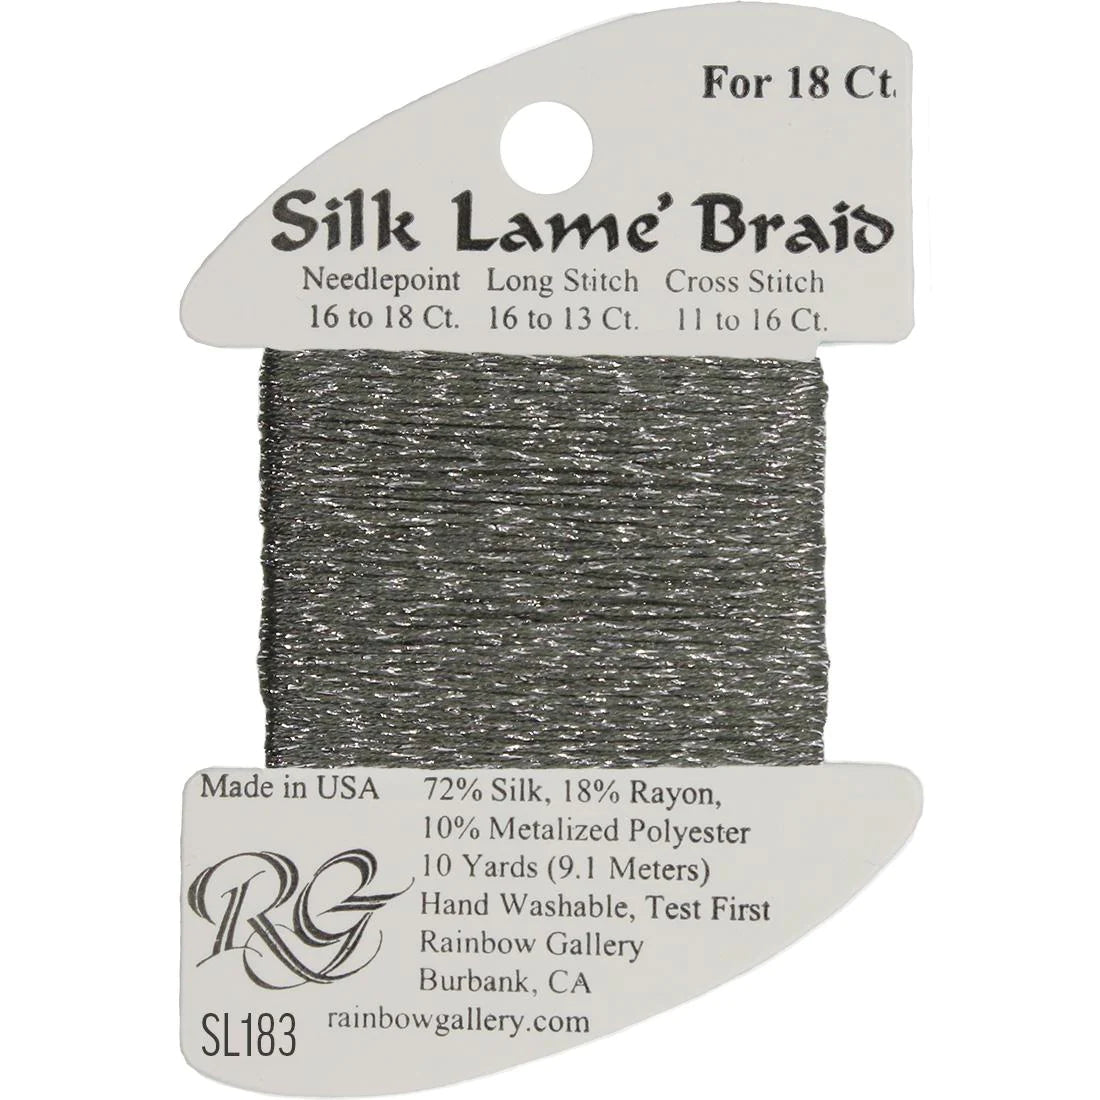 Silk Lame Braid 18 CT (SL100 - SL199)